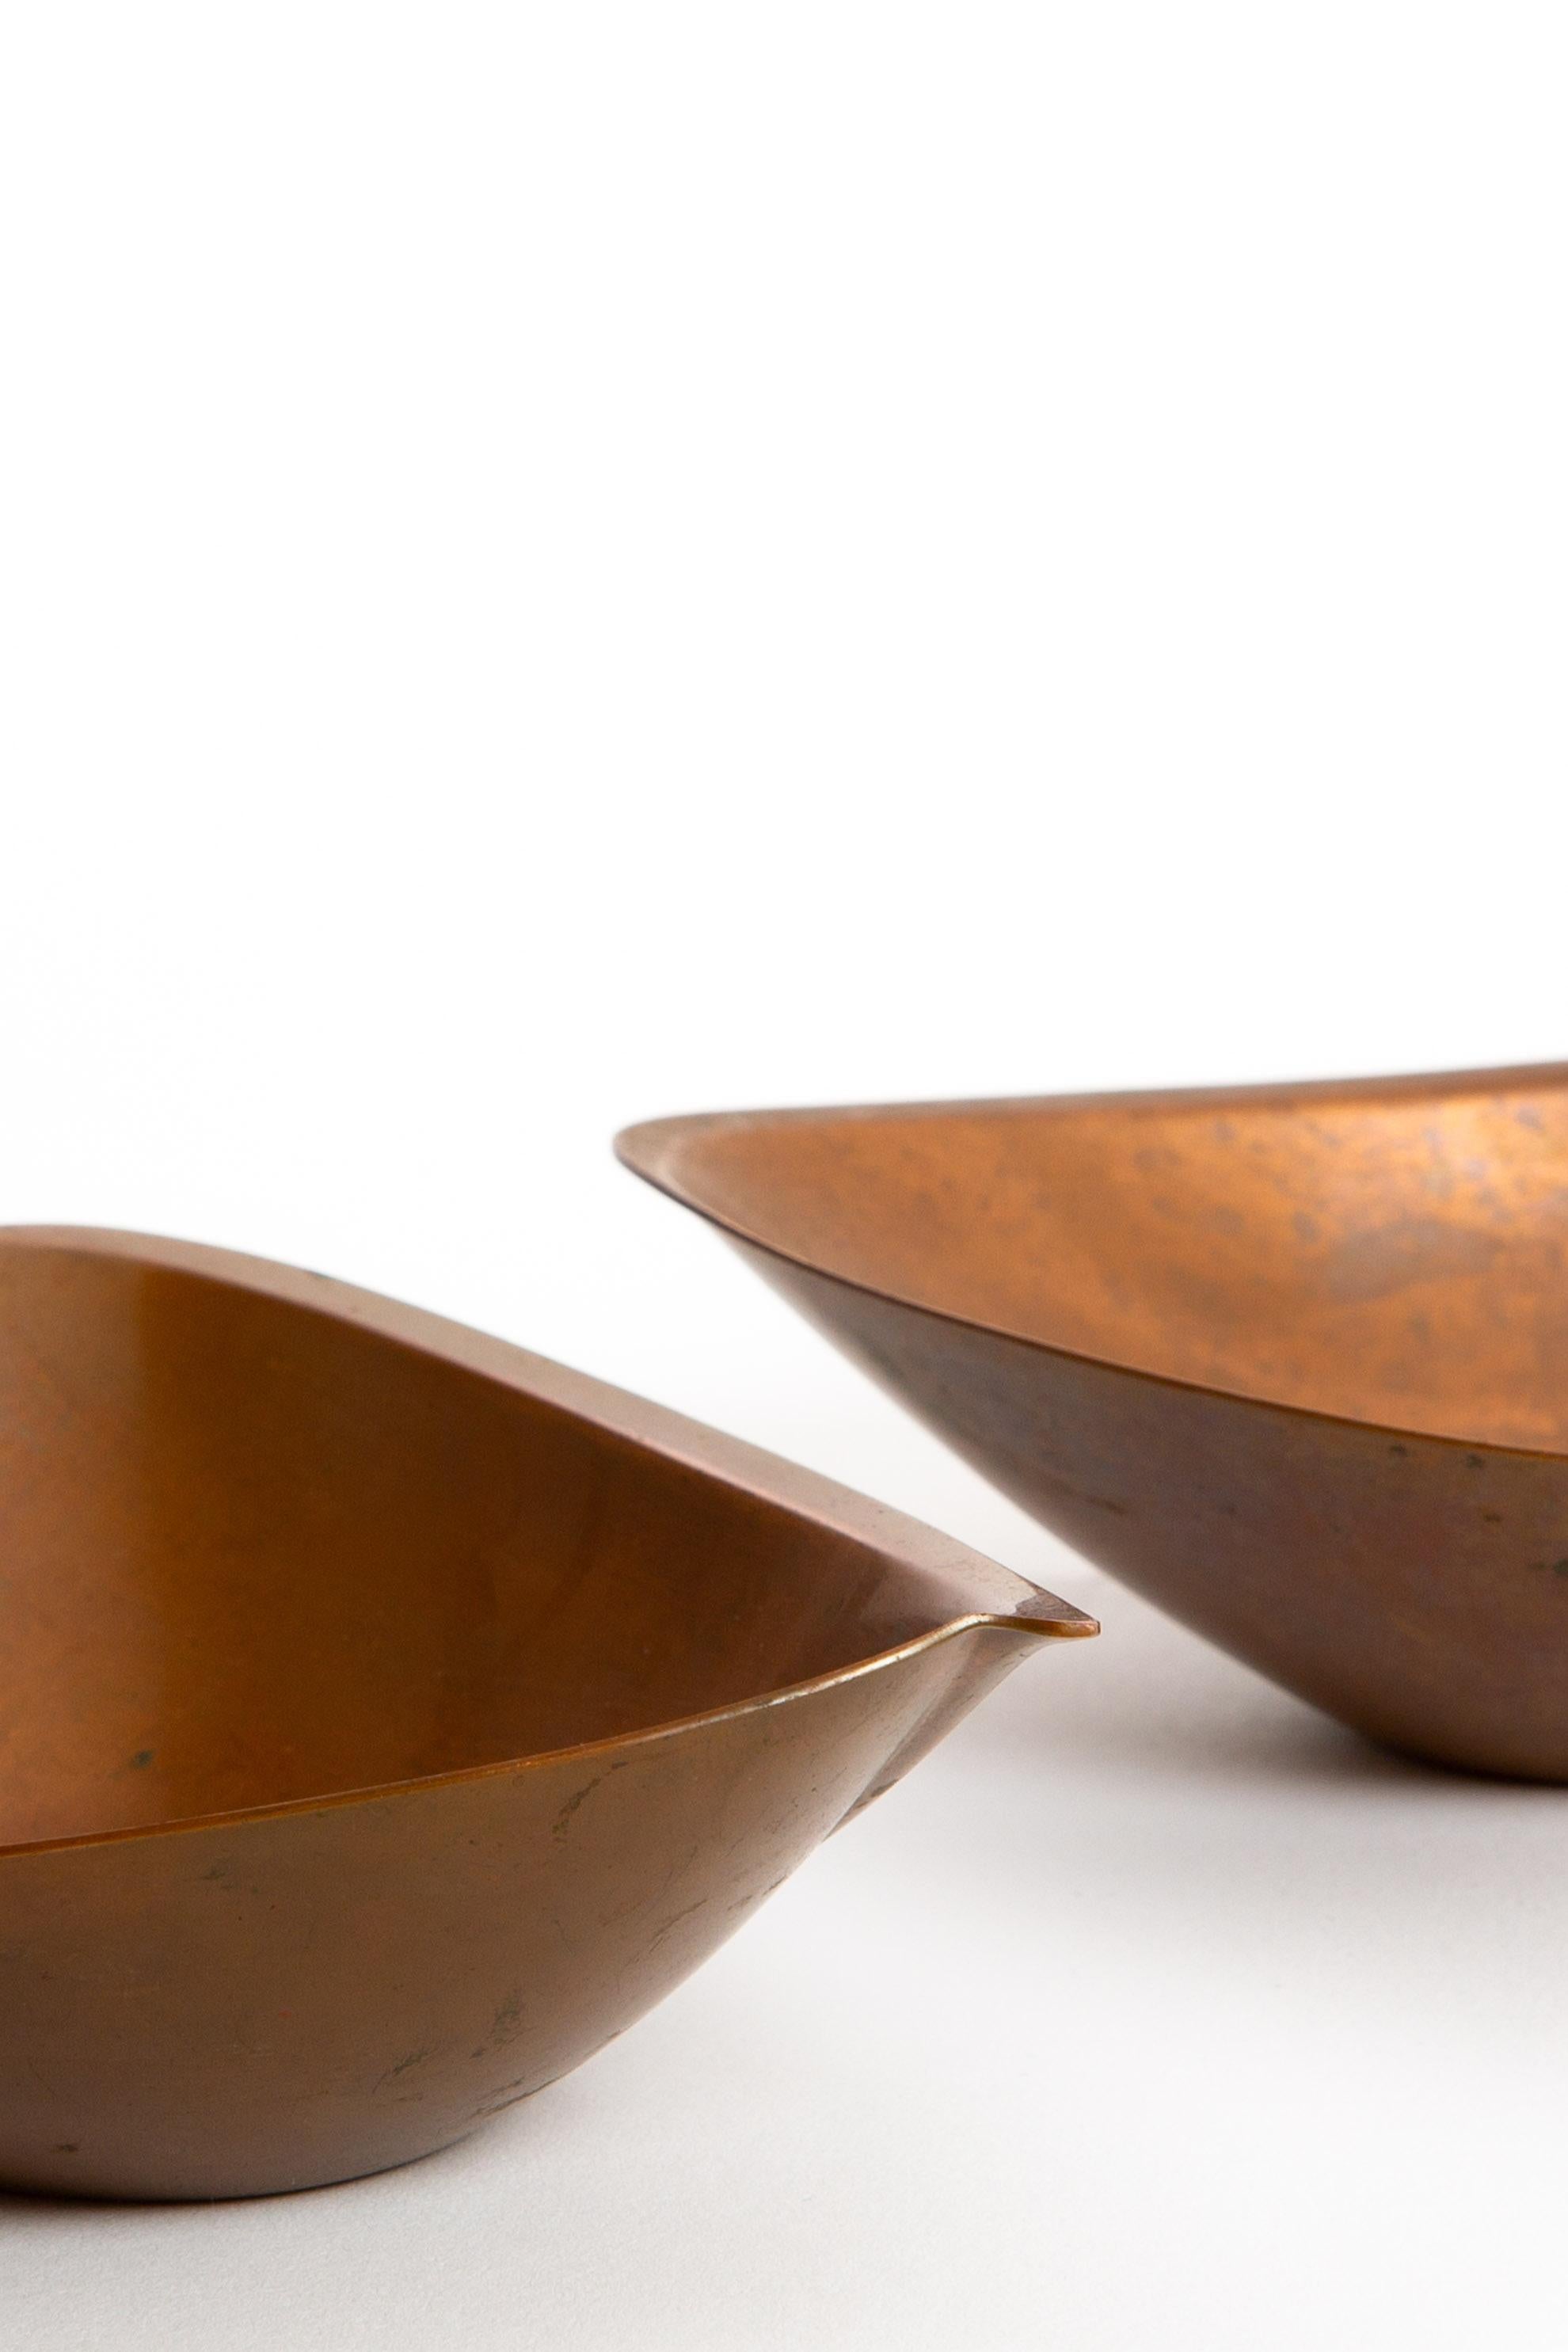 Tapio Wirkkala Bronze Bowl Organic Form by Kultakeskus Oy Finland For Sale 1